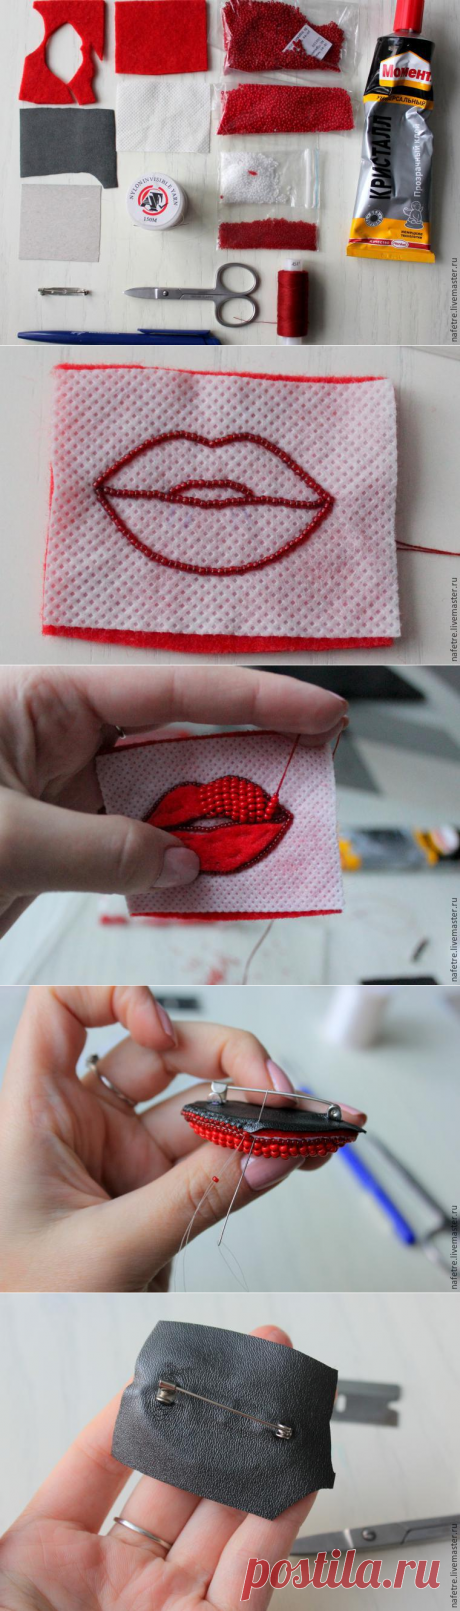 Создаем стильную объемную брошь из бисера «Red Lips» - Ярмарка Мастеров - ручная работа, handmade